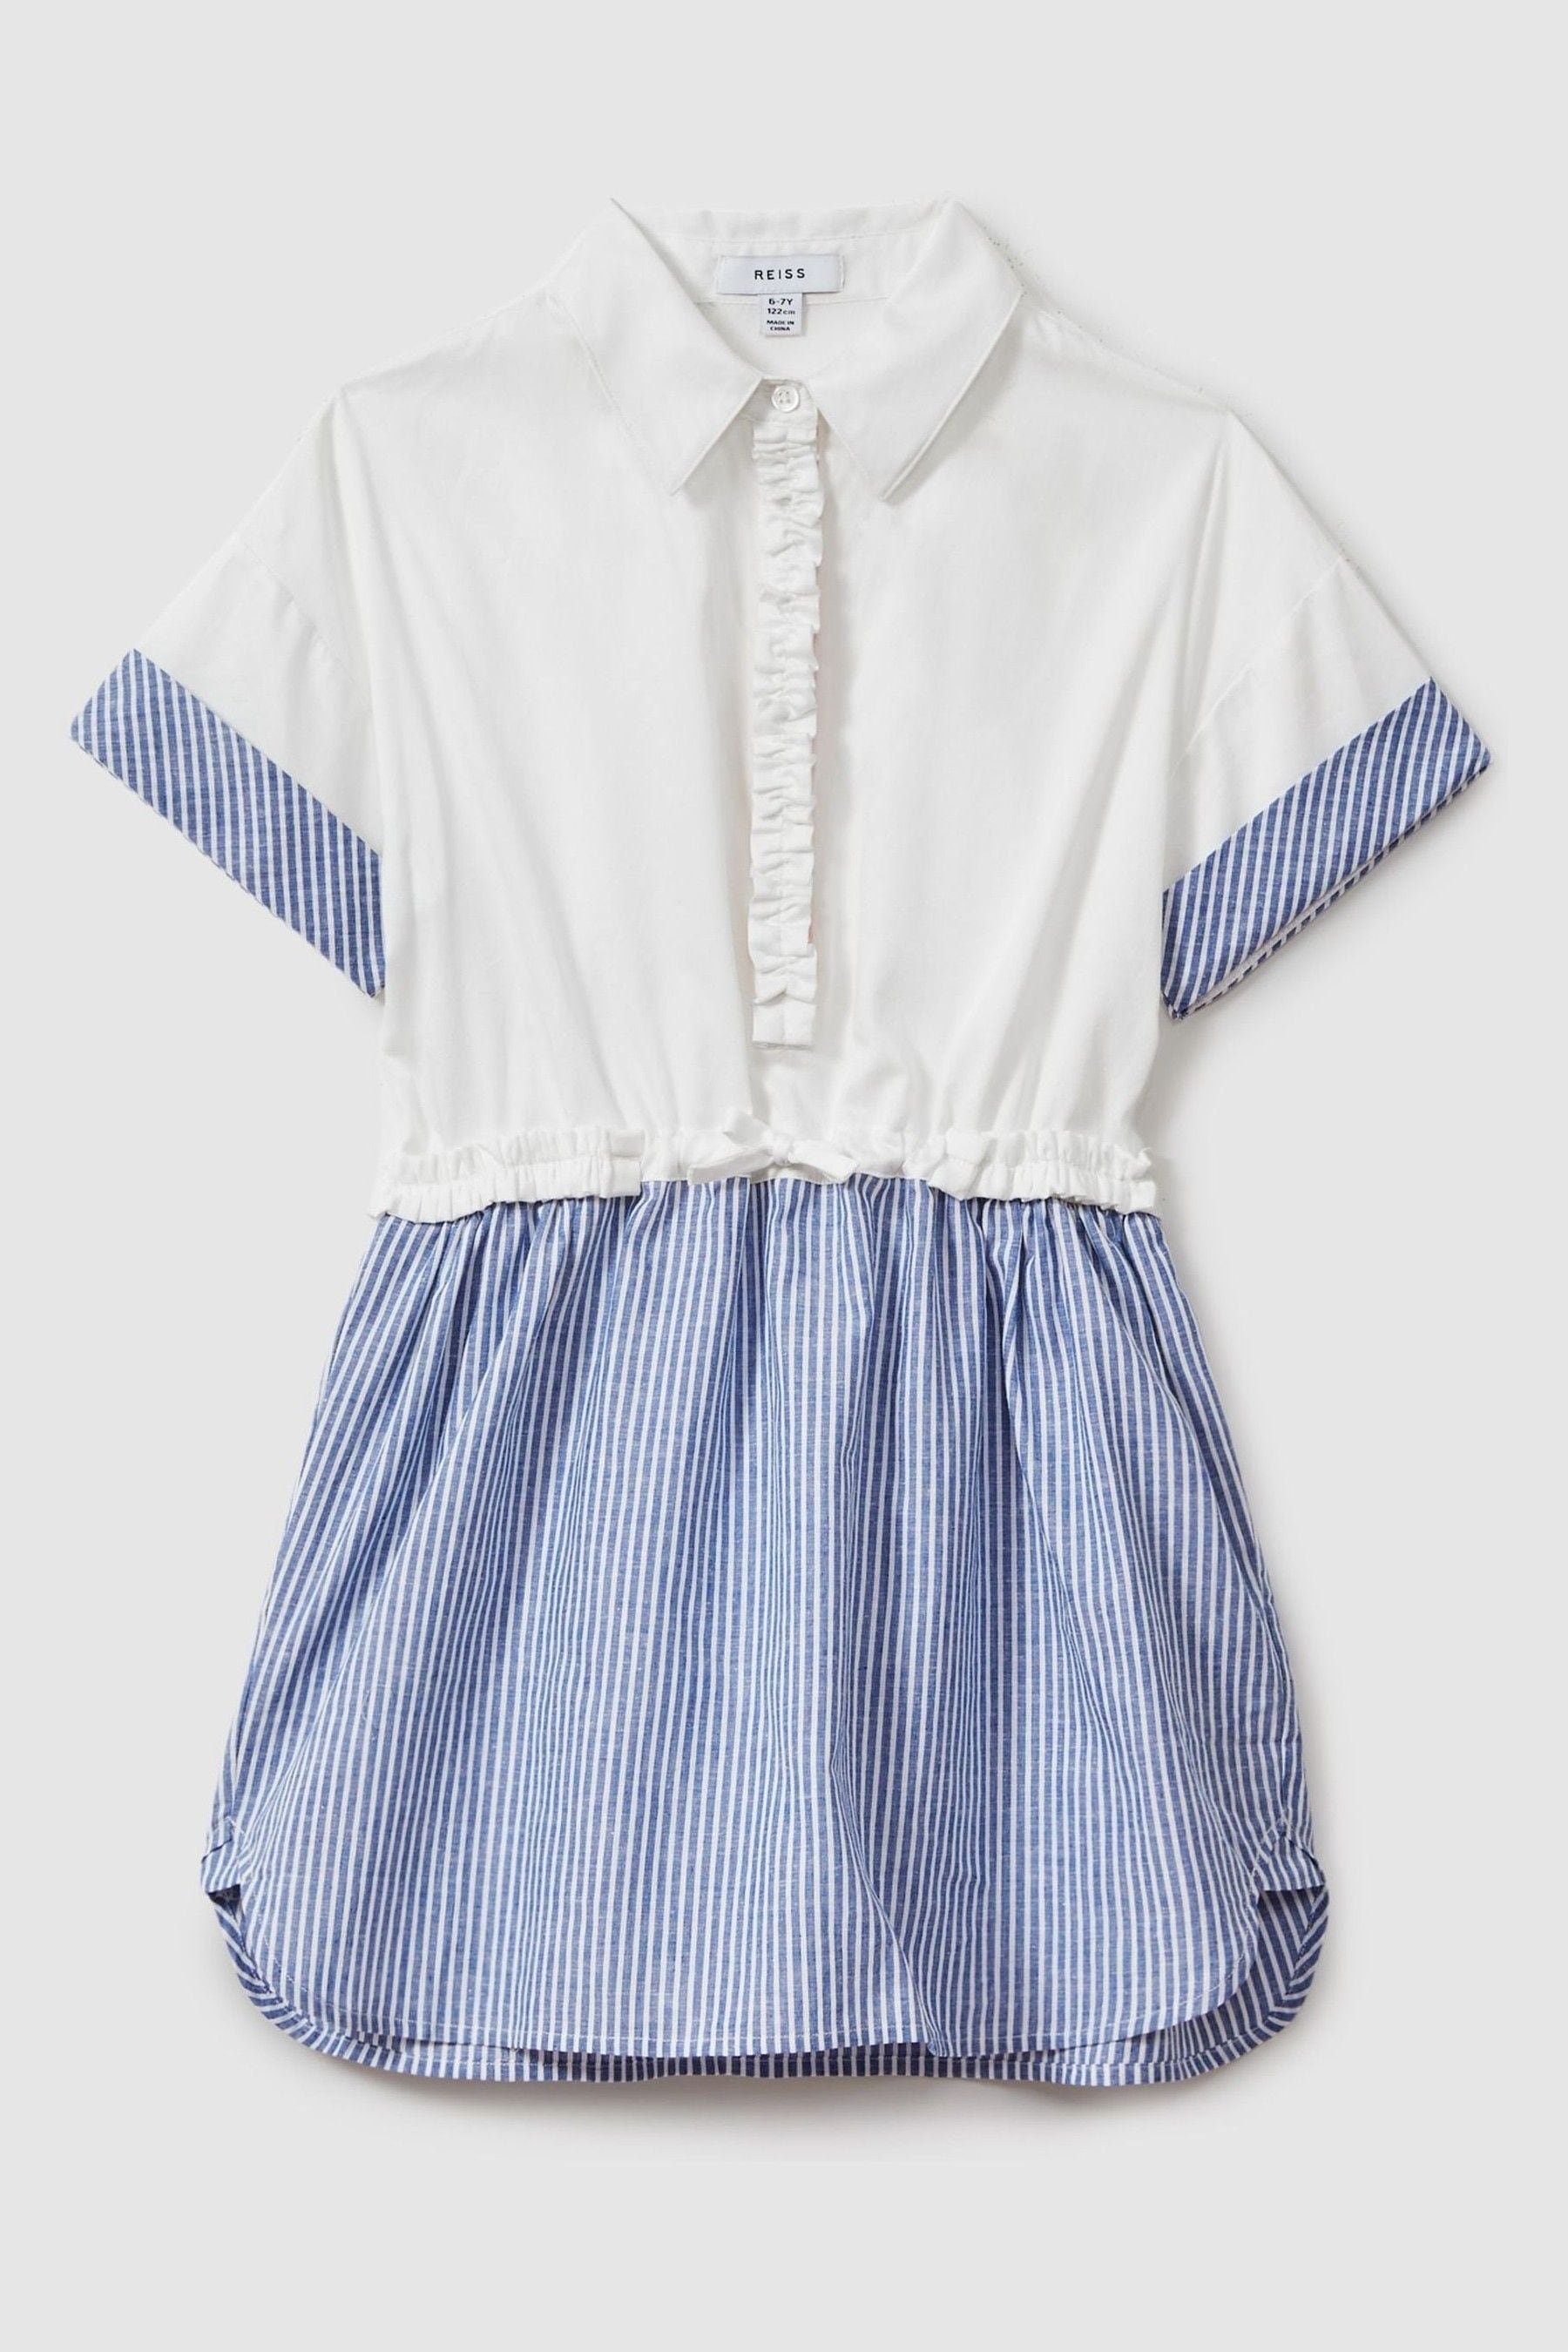 Reiss Maxy - Ivory Teen Cotton-linen Shirt Dress, Uk 13-14 Yrs